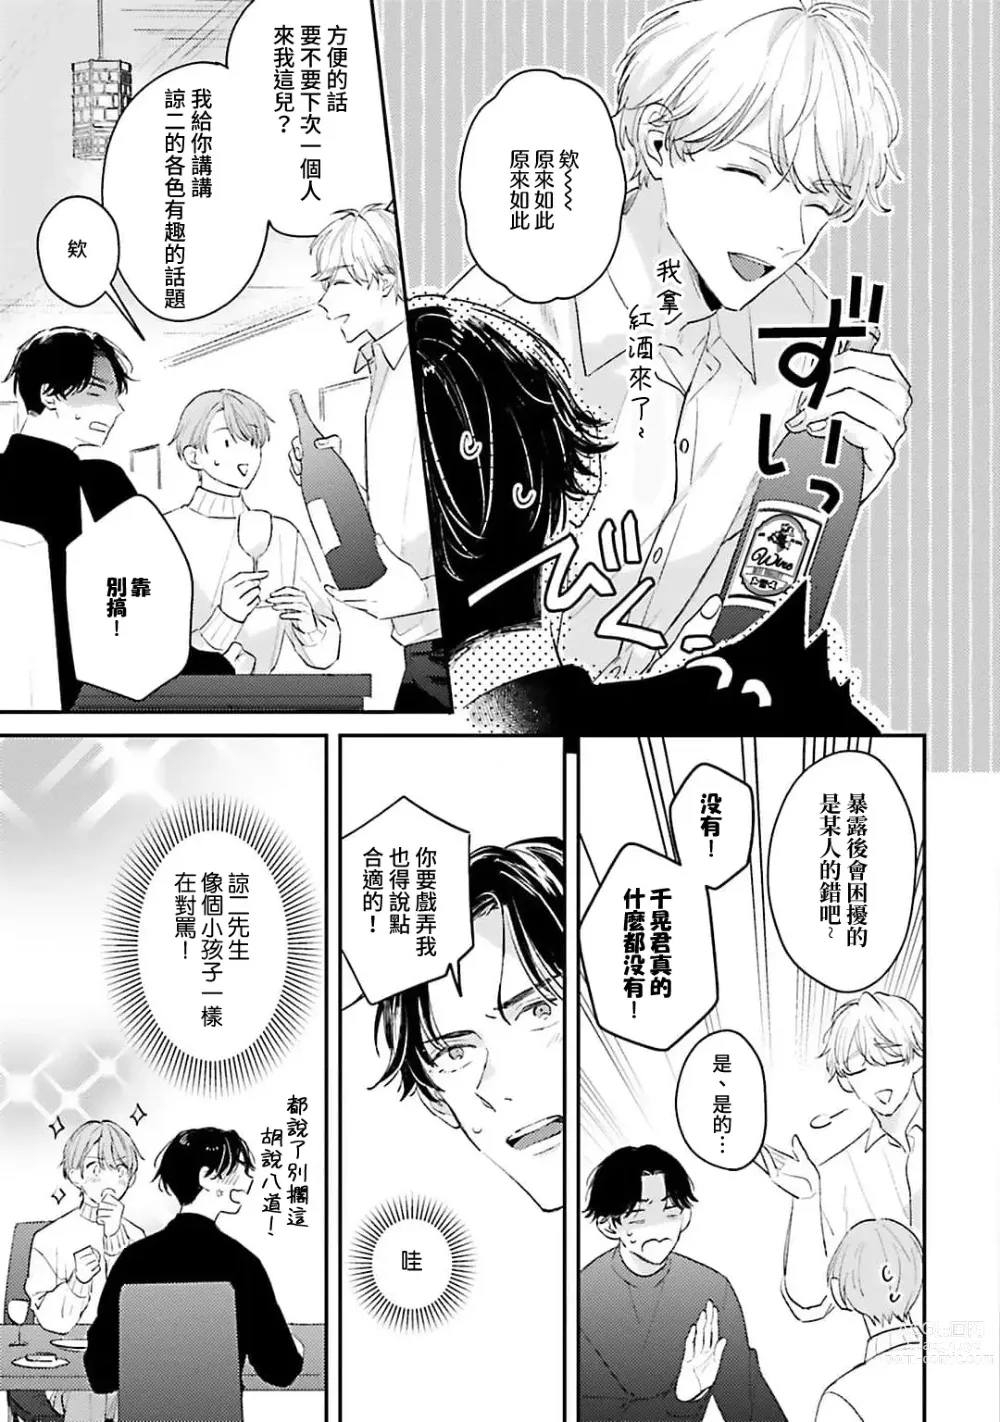 Page 108 of manga 绽放的恋爱皆为醉与甜1